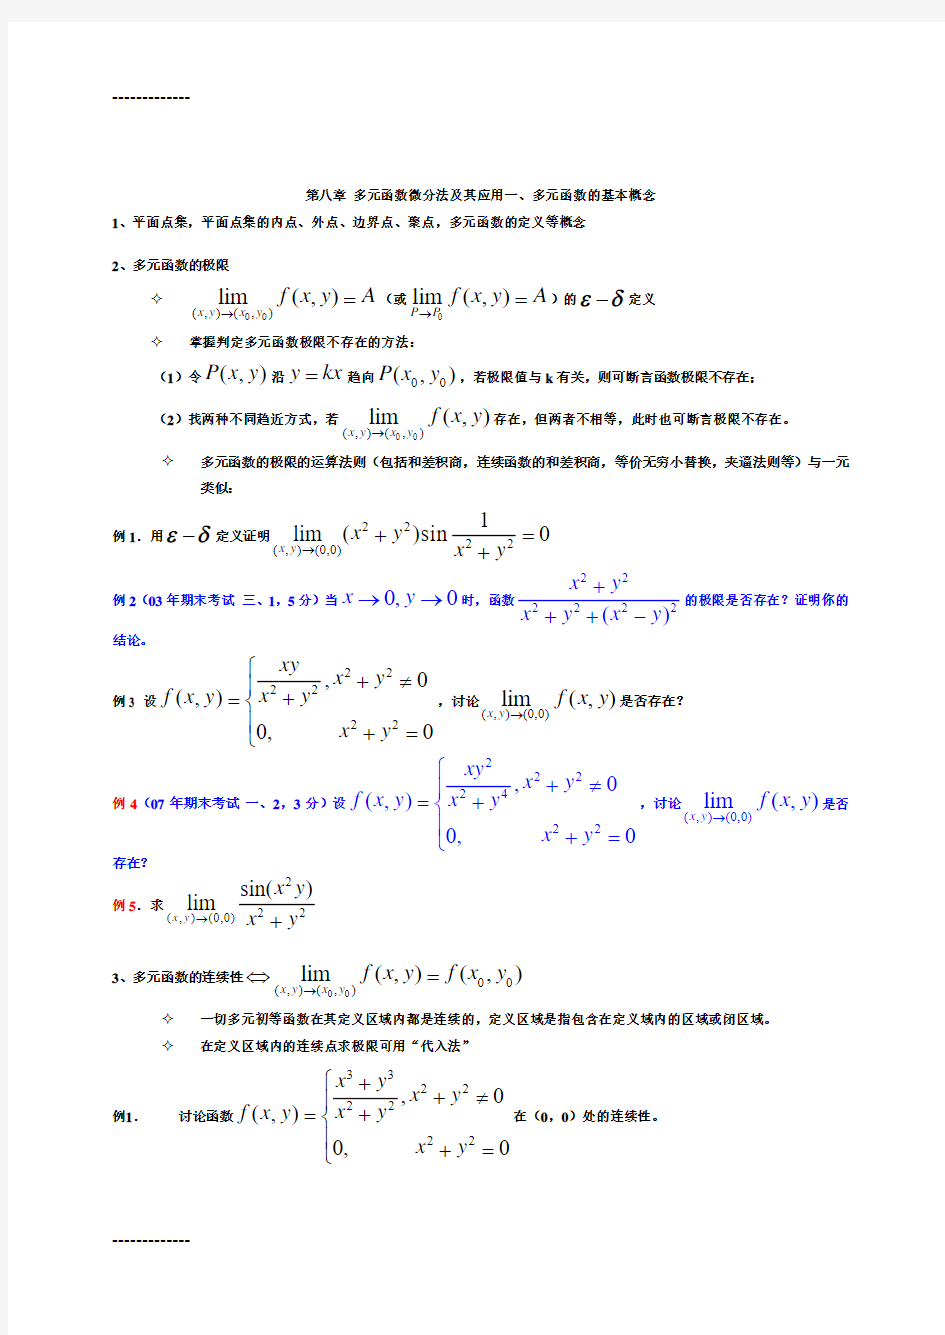 (整理)多元函数微分法及其应用81534